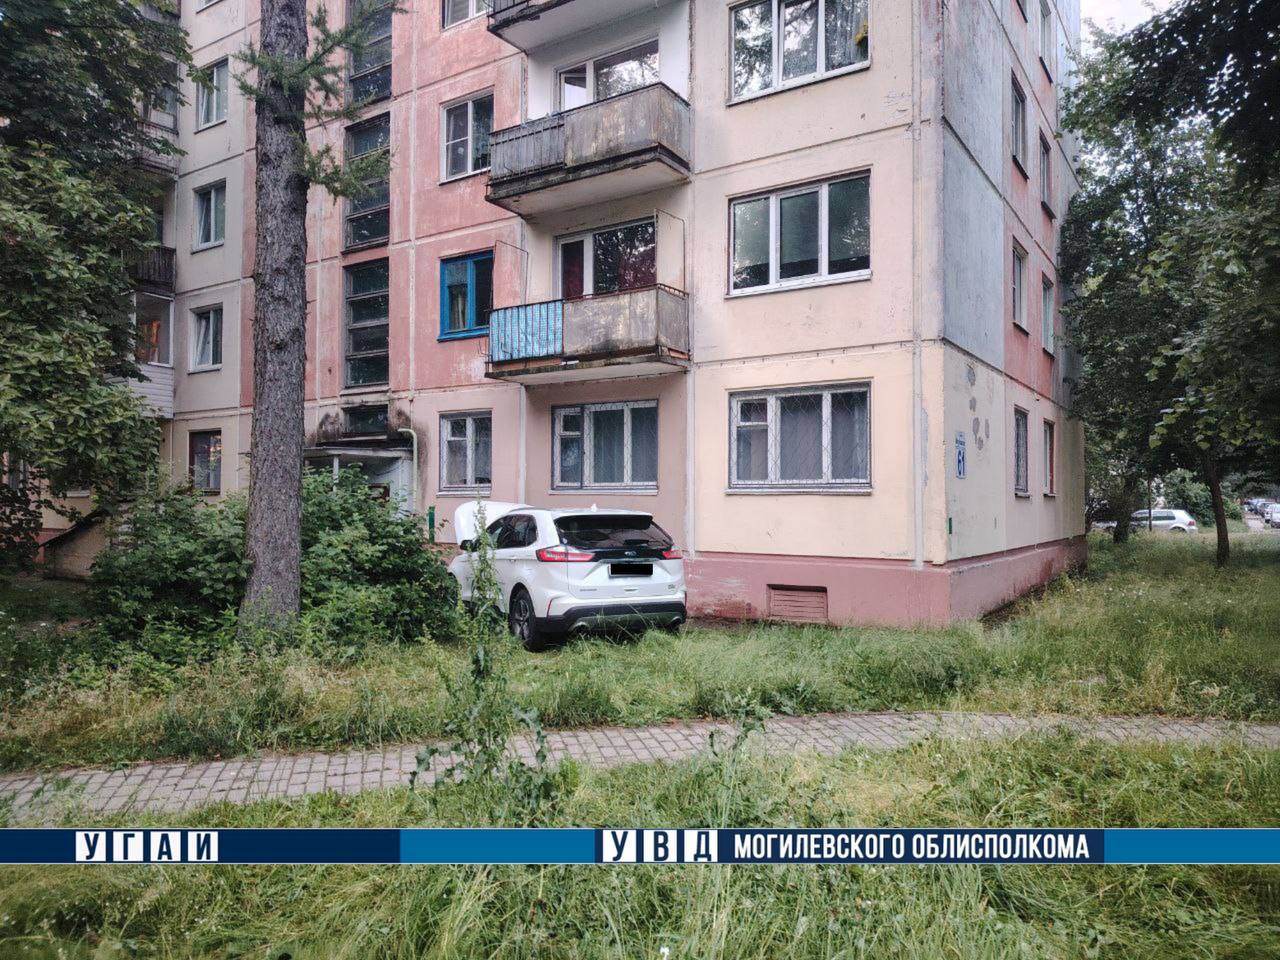 Водитель иномарки, которая въехала вчера в пятиэтажный дом в Могилеве, погиб
